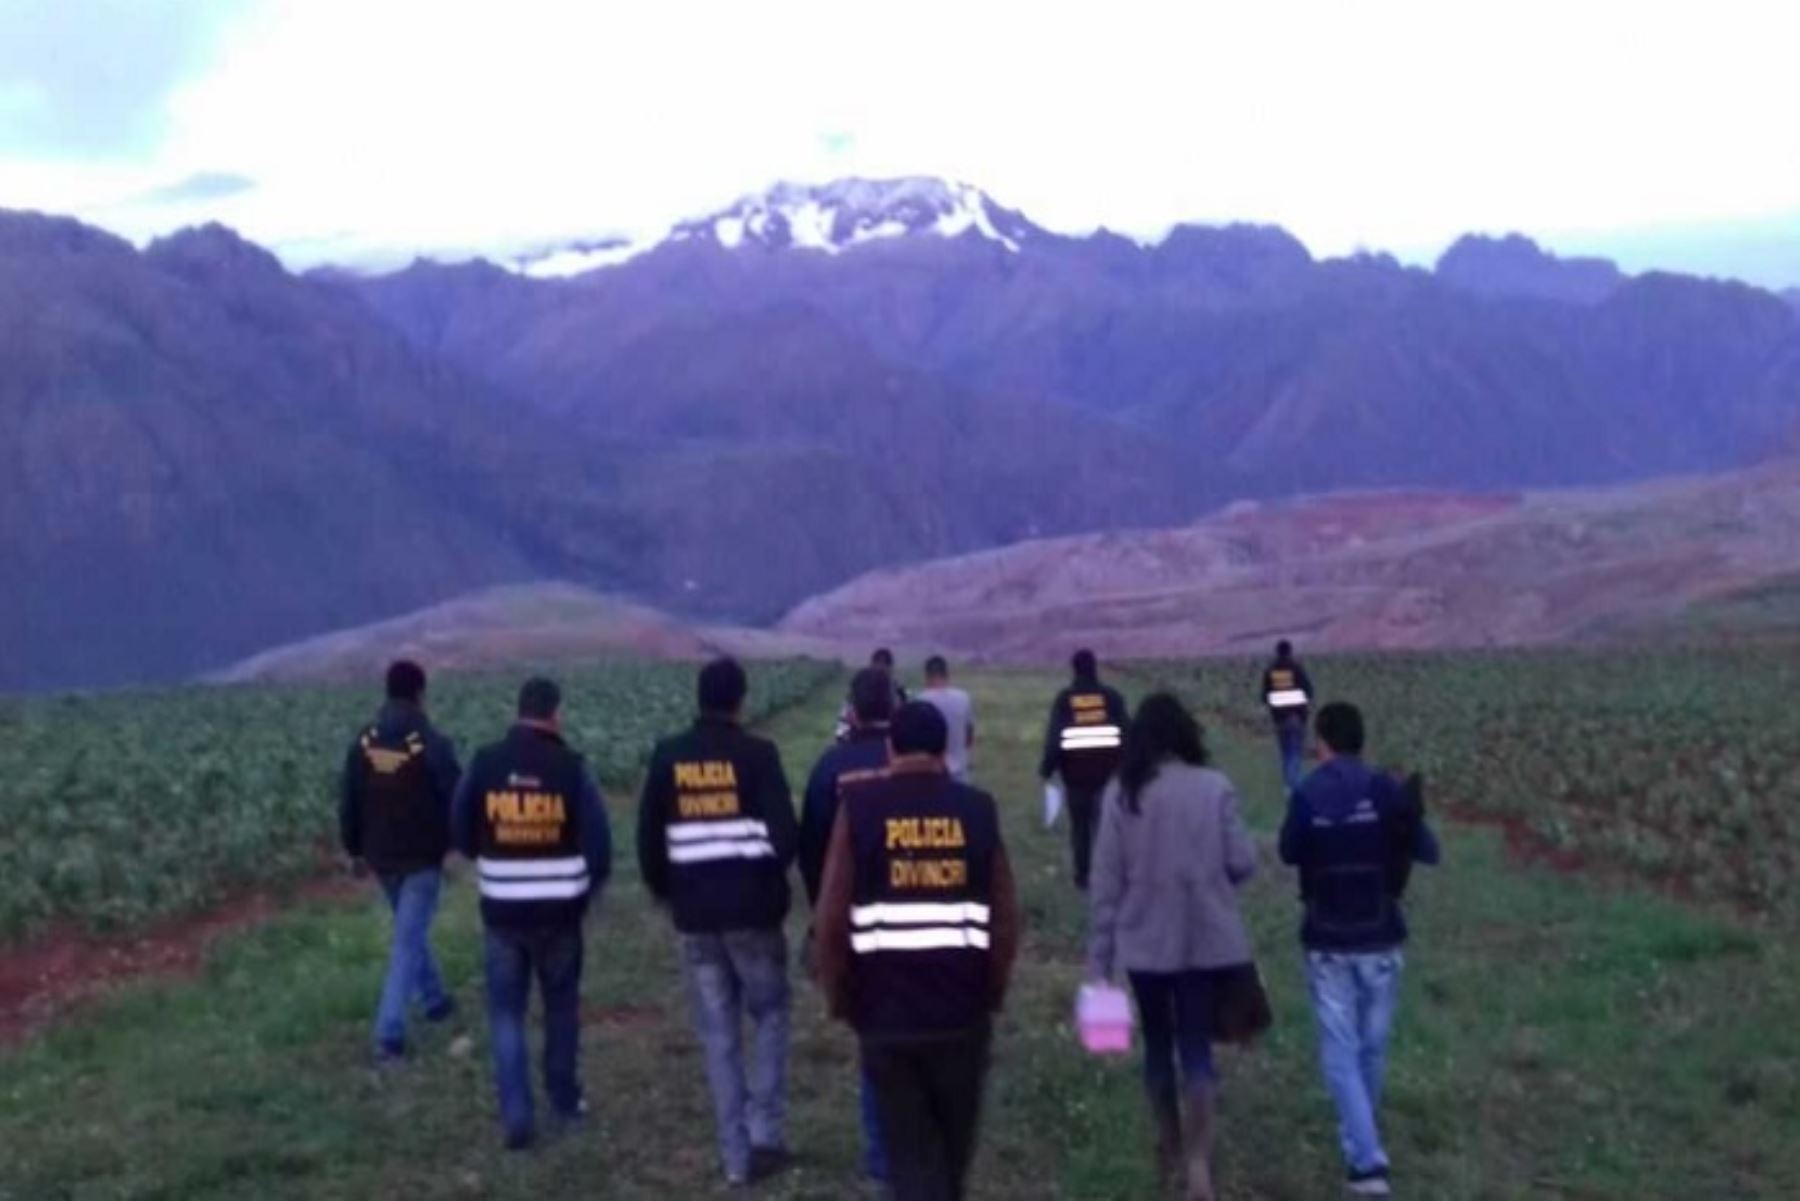 Un total de 15 turistas fueron reportados como desaparecidos durante el 2018, de los cuales 13 fueron ubicados y dos, que son la ecuatoriana Nathaly Salazar Ayala (28) y la norteamericana Carla Valpeoz (35), continúan como no habidas, confirmó la región Policial del Cusco.